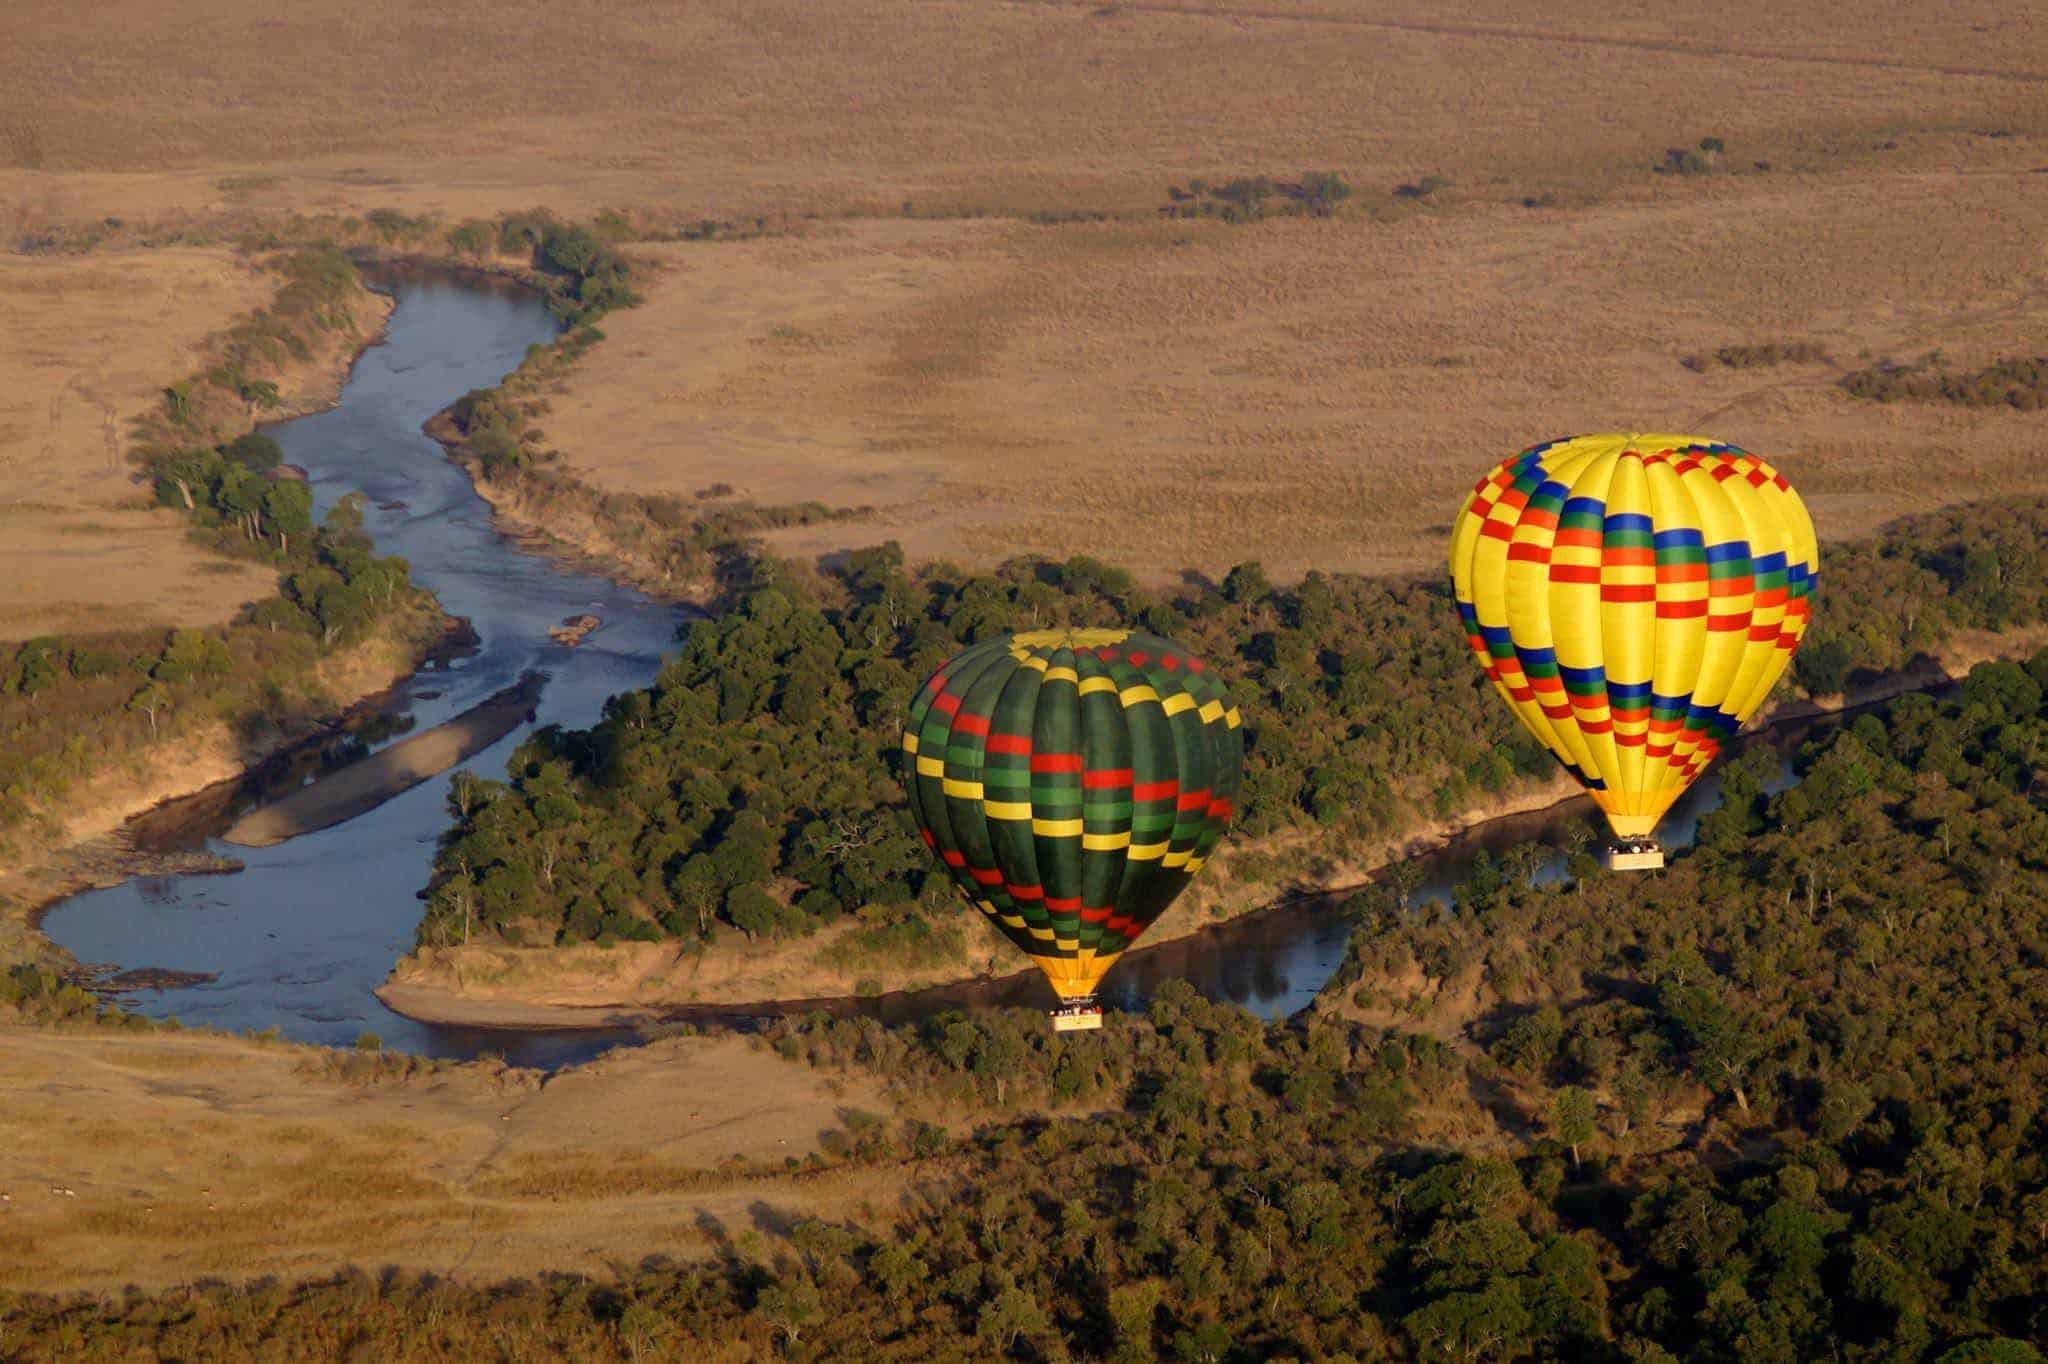 Enjoy hot air balloon safari in our mara mara's tour packages